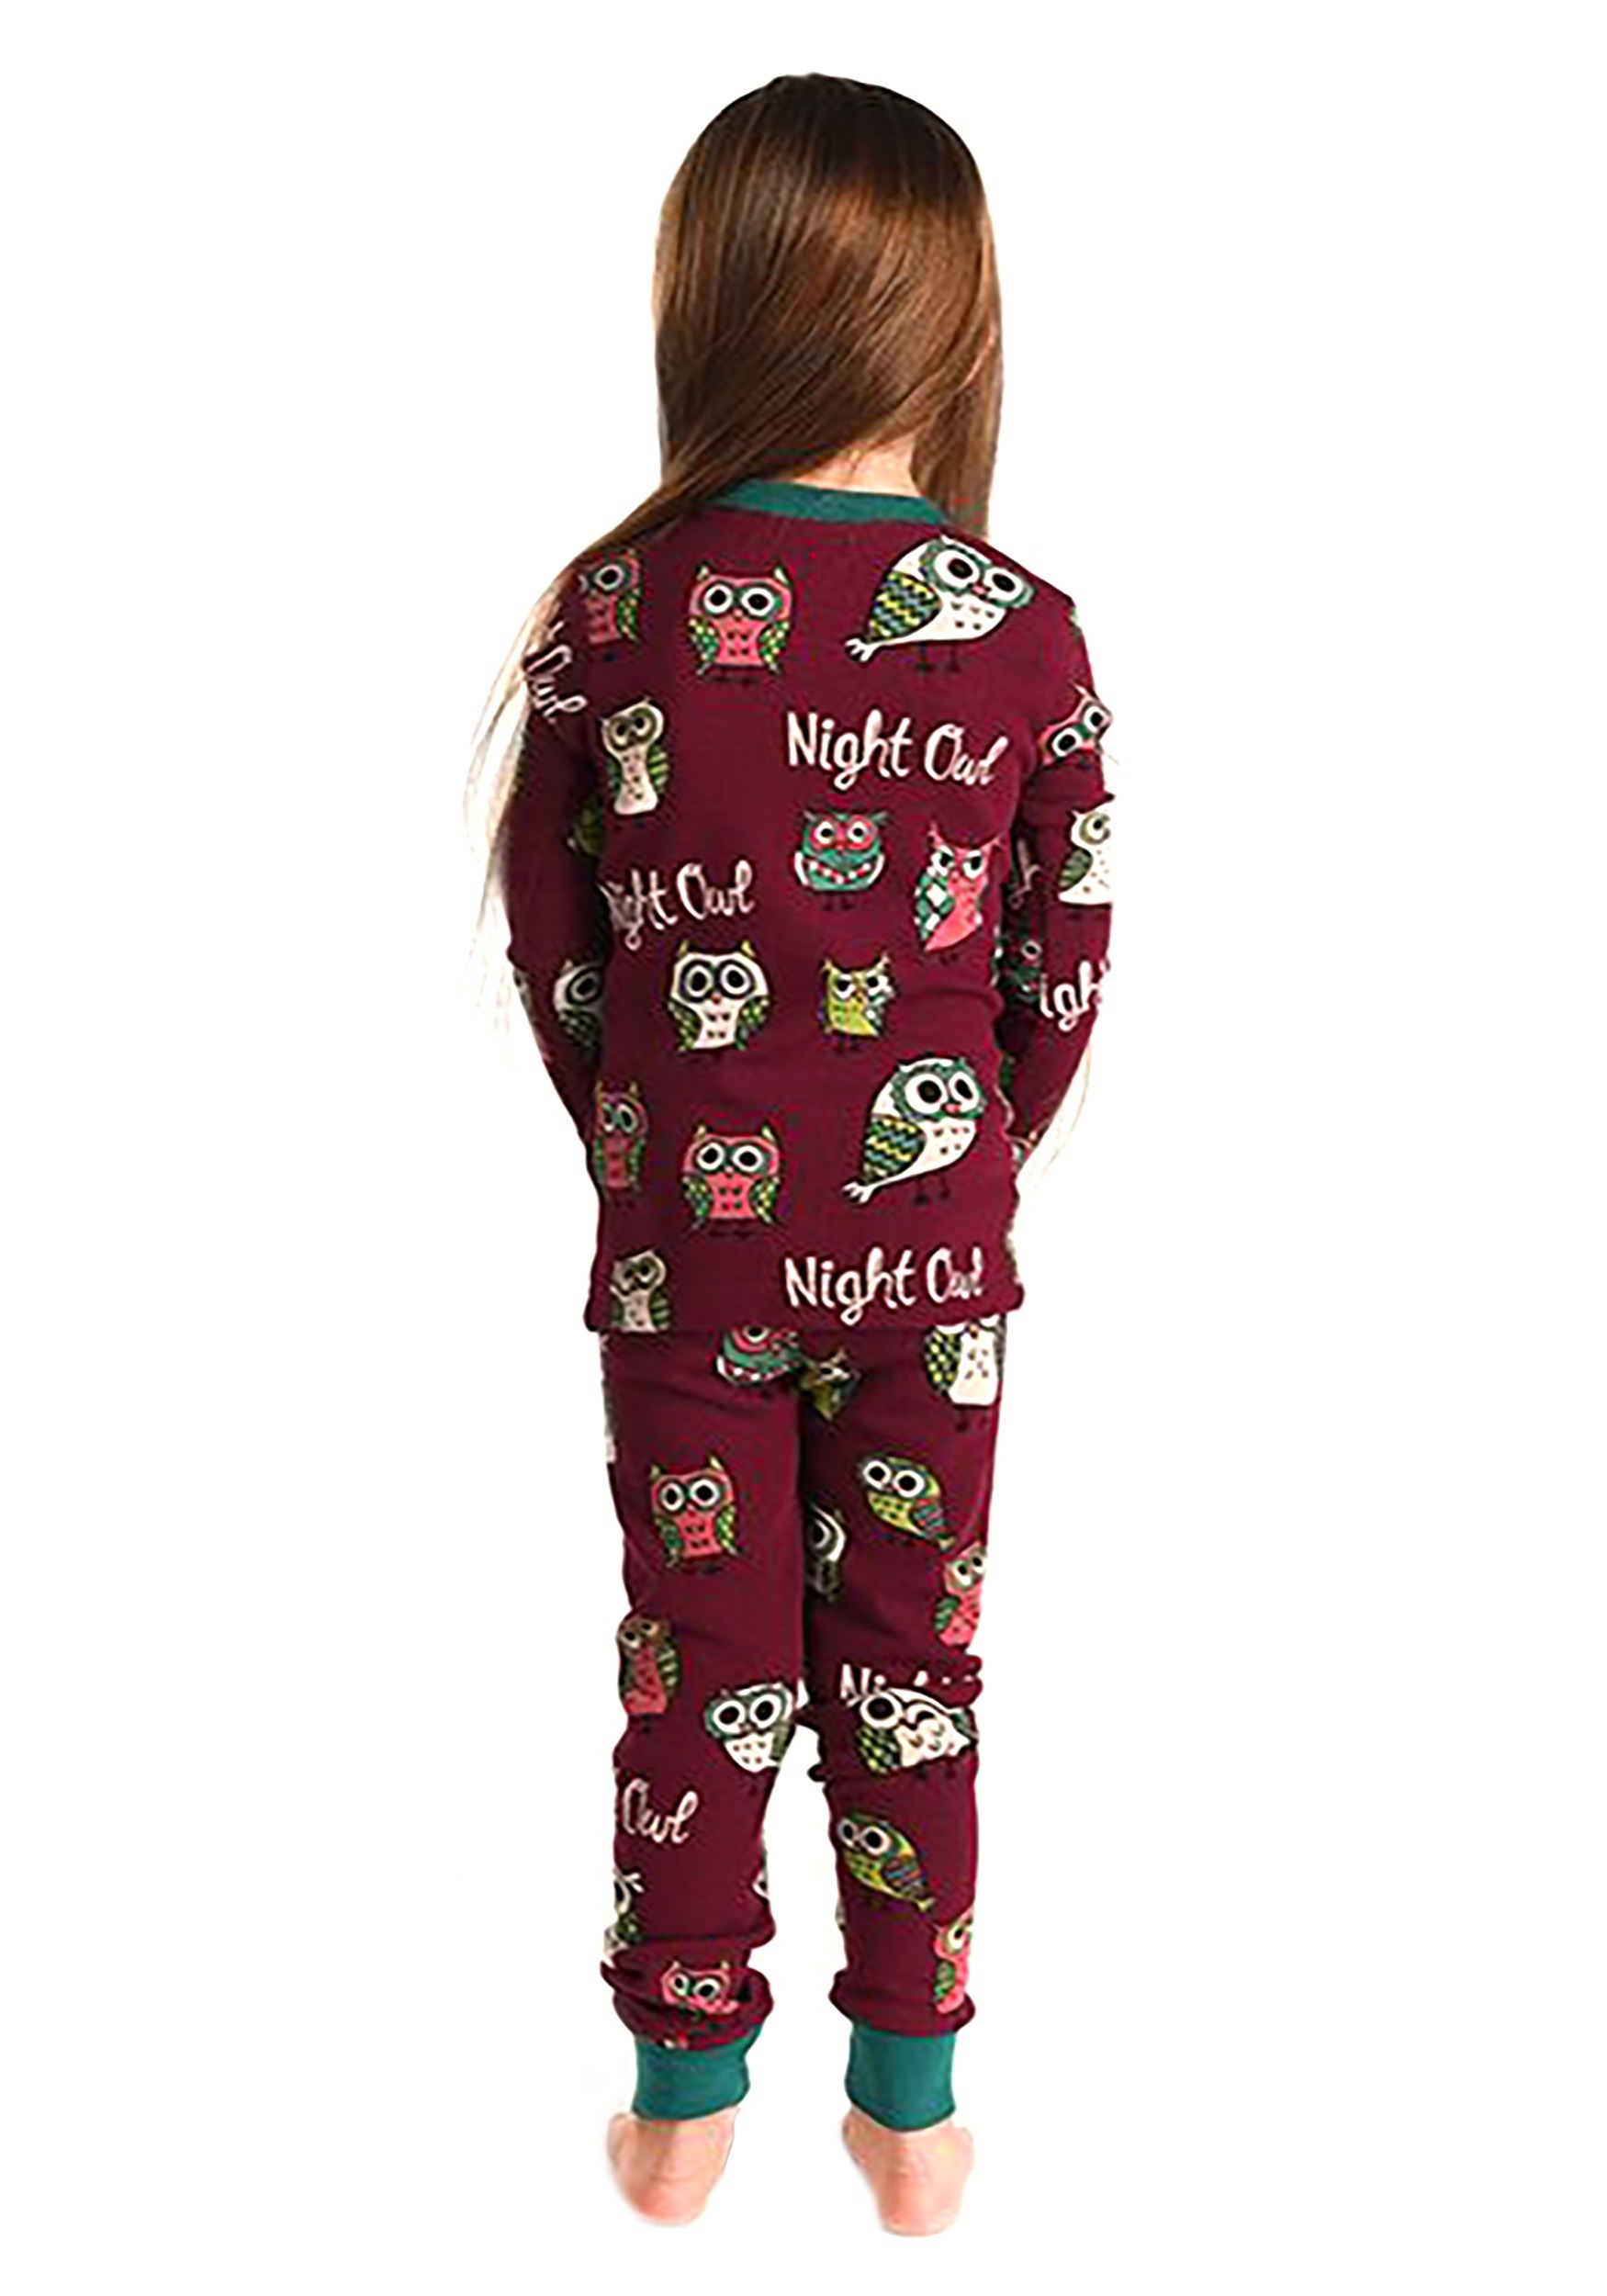 6 Fun Soft Animal Pajamas Im Owl Yours Kids Long Sleeve Pajama Sets by LazyOne 